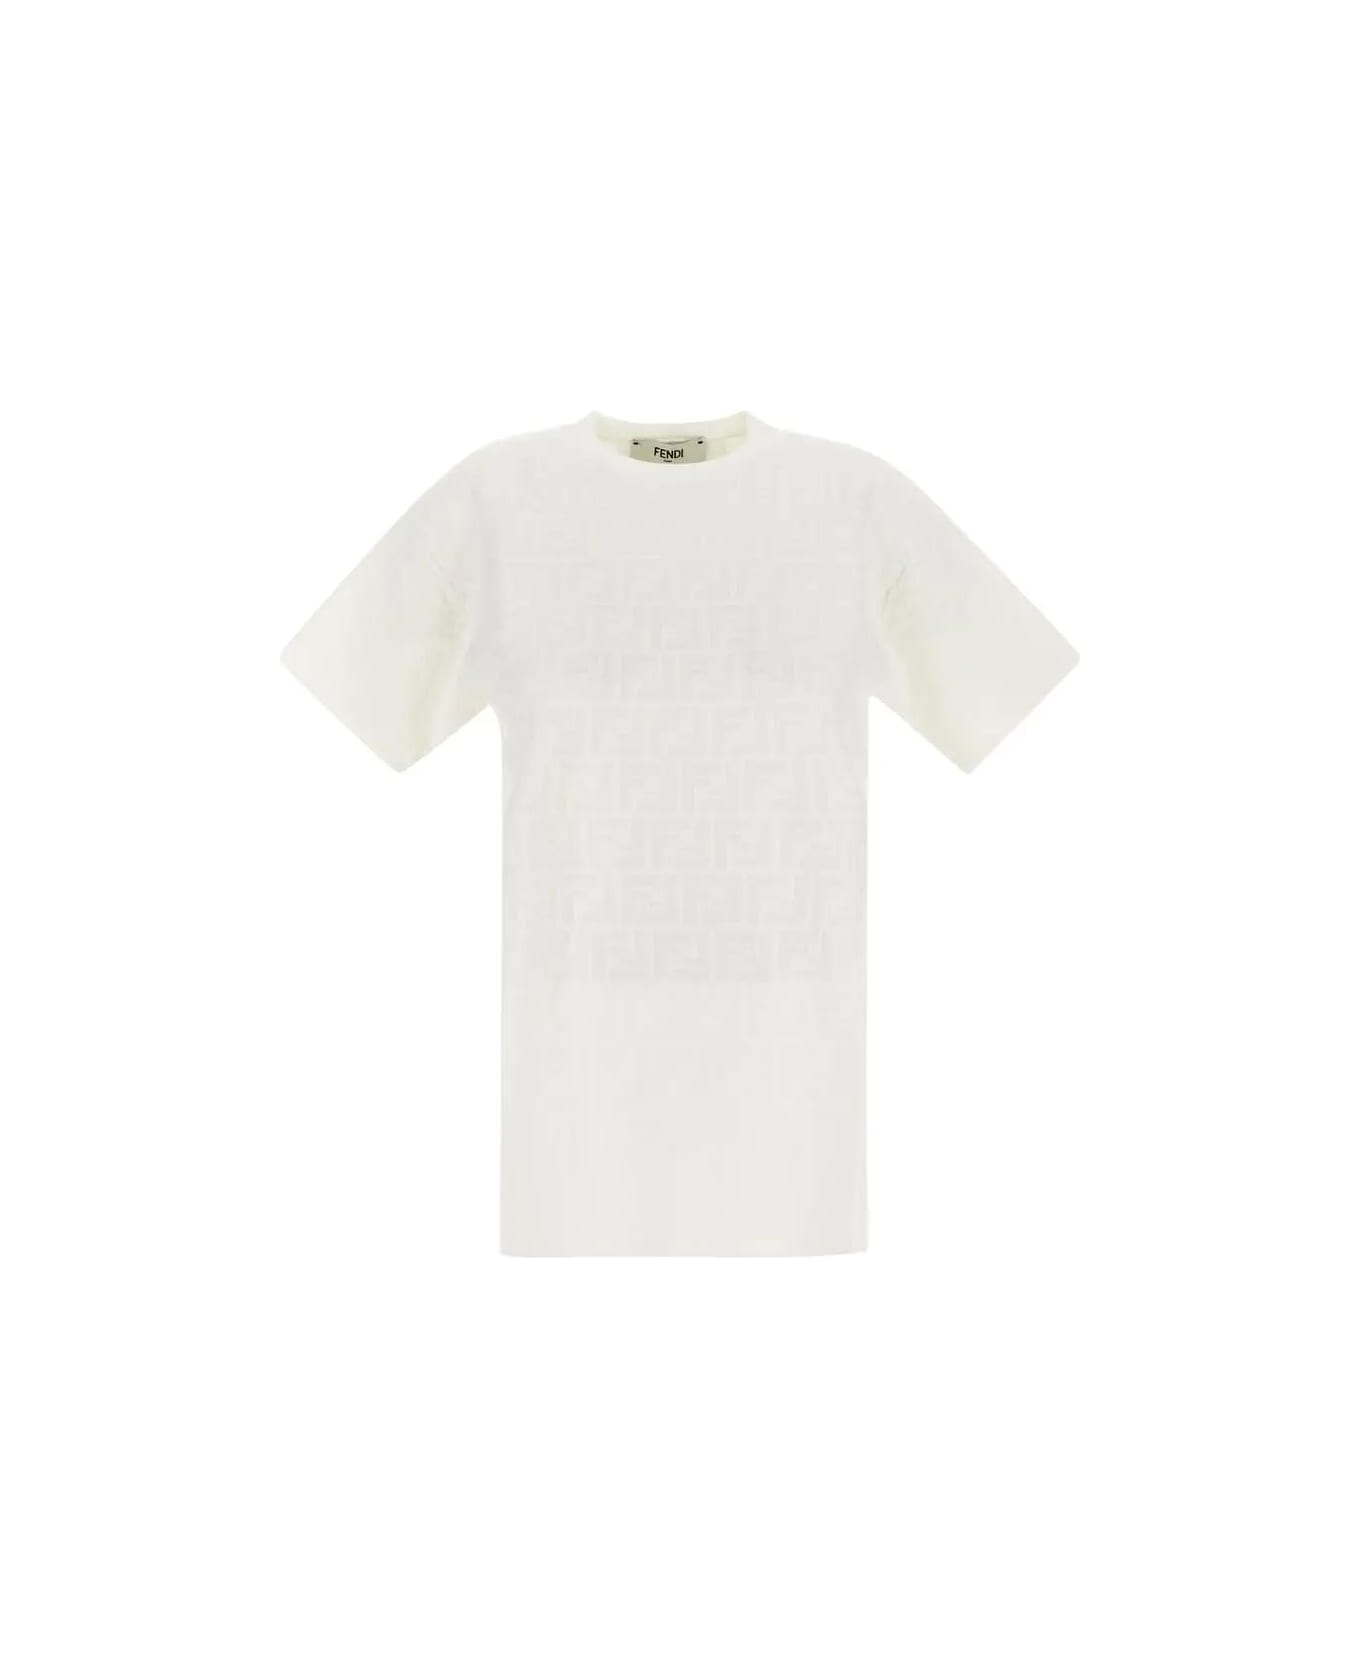 Fendi Ff Viscose T-shirt - Znm White